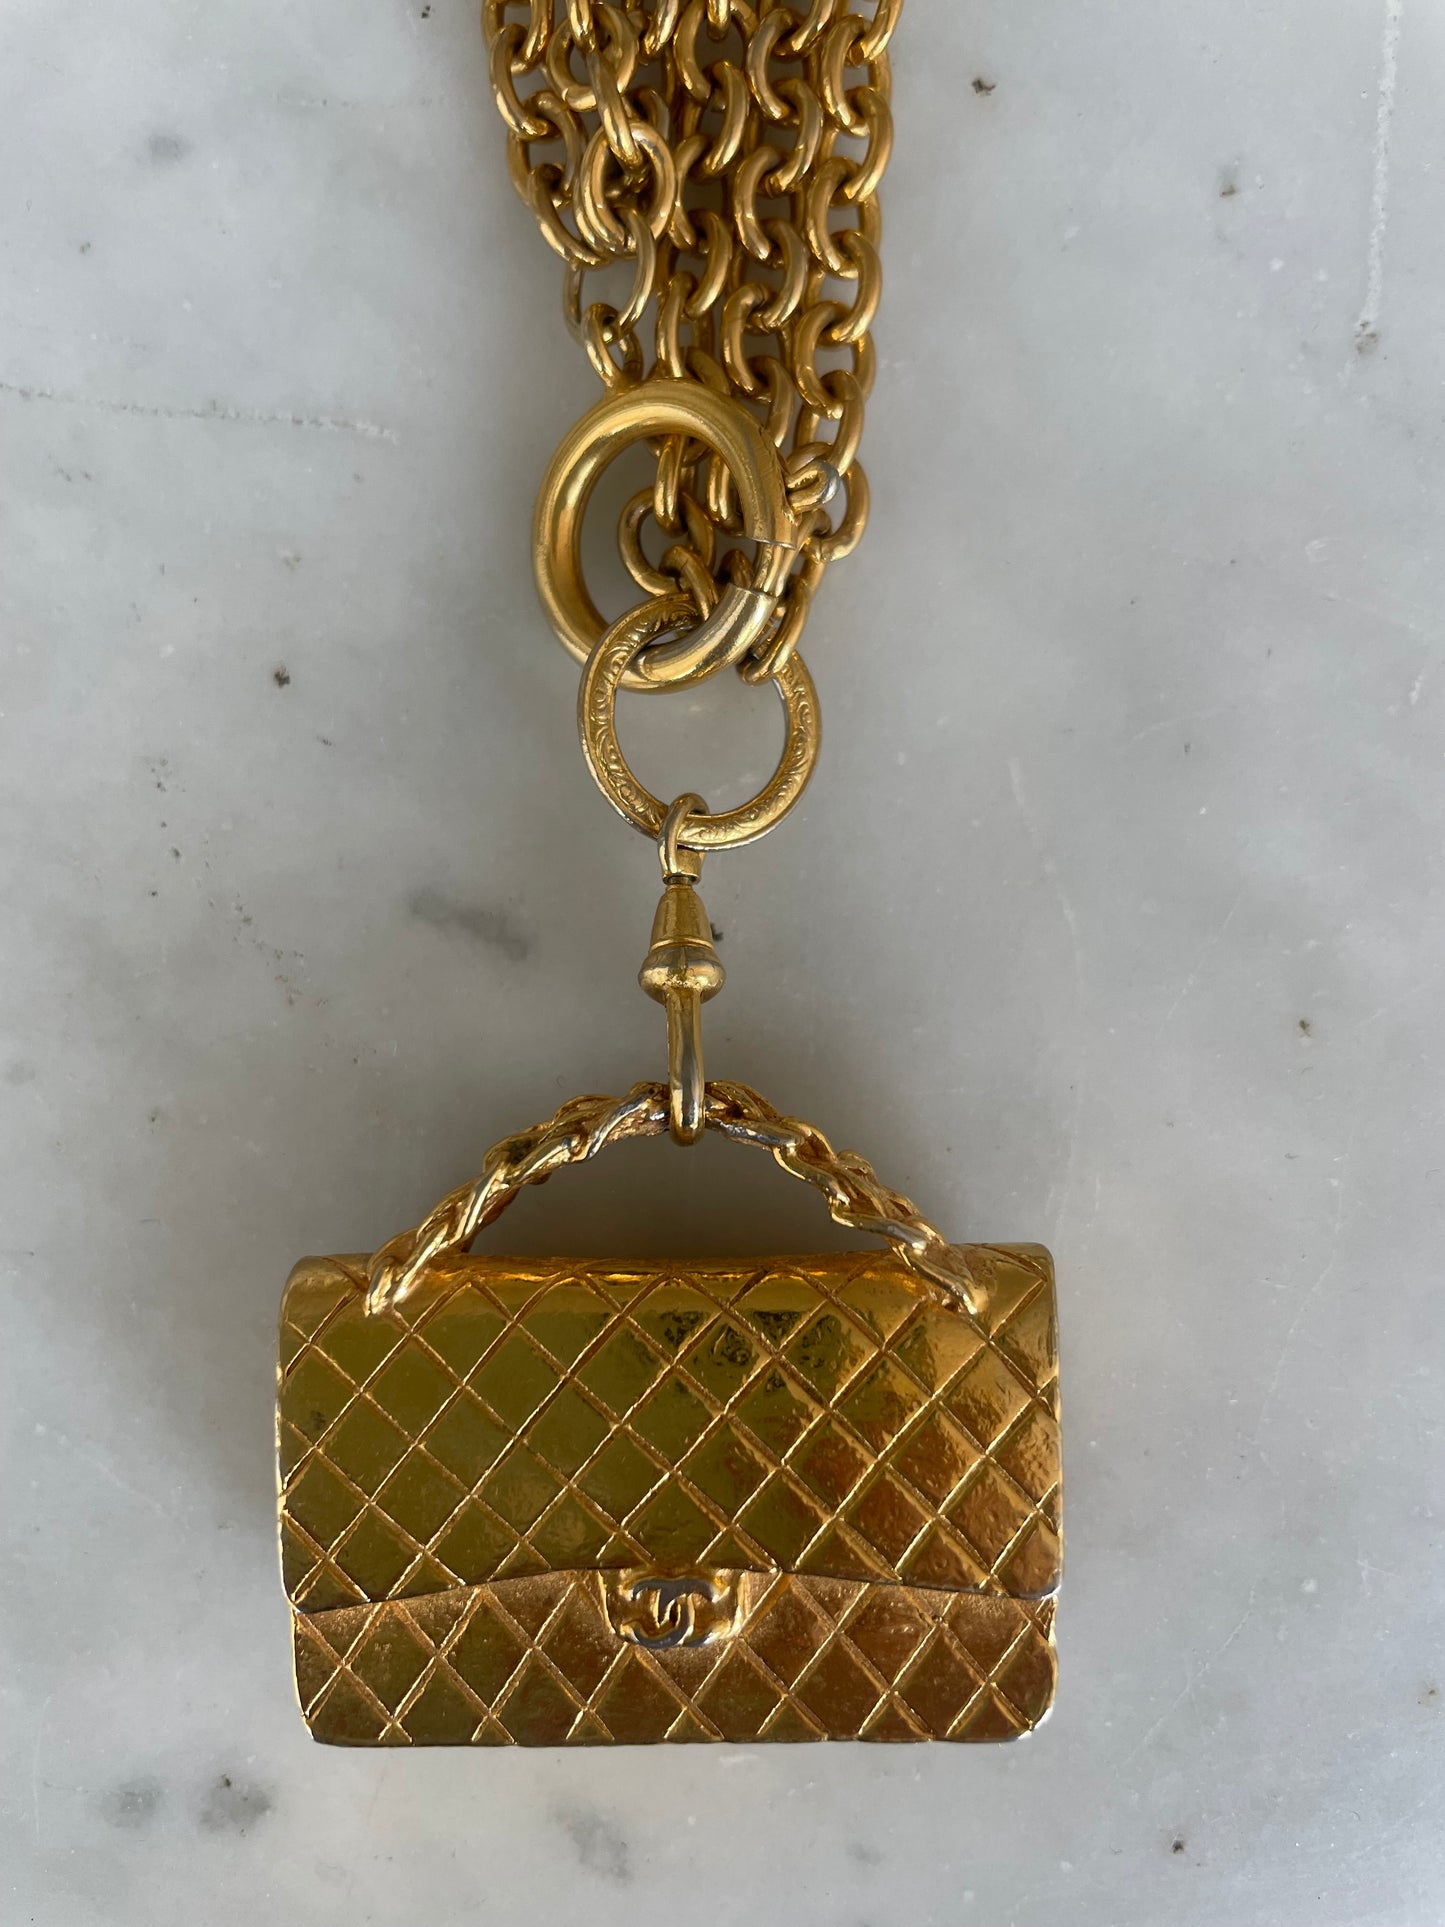 Chanel Gold-Tone Flap Bag Pendant Necklace